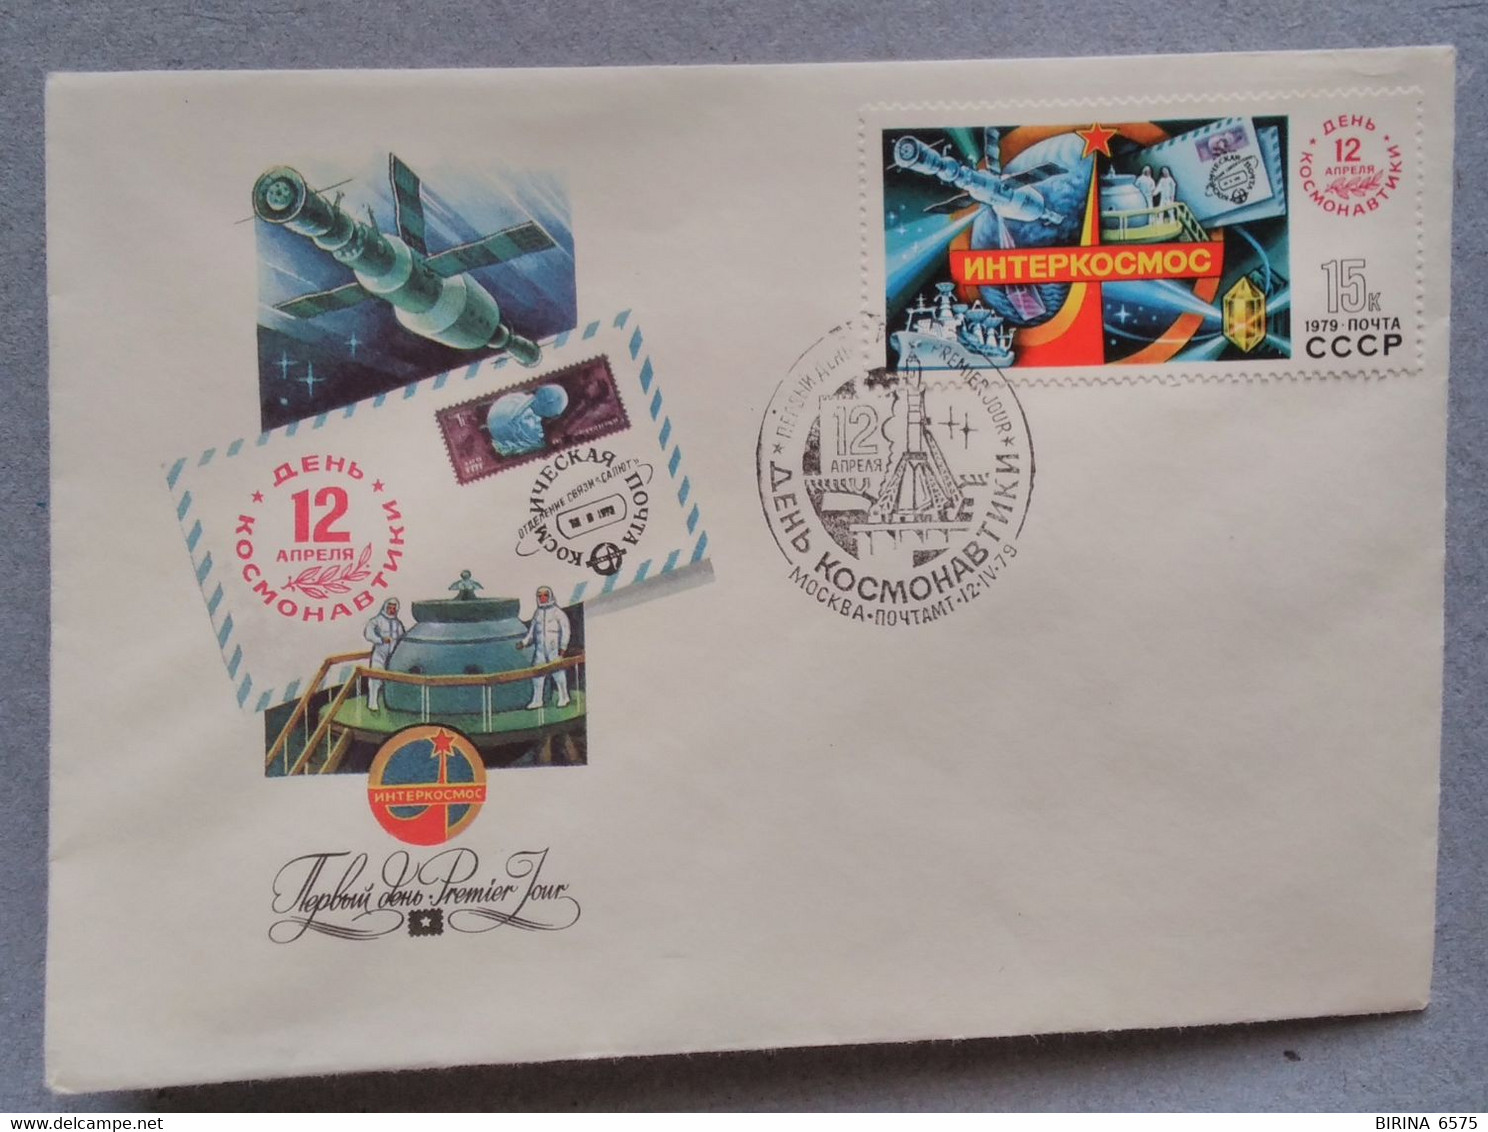 Astronautics. Intercosmos. First Day. 1979. Stamp. Postal Envelope. The USSR. - Sammlungen